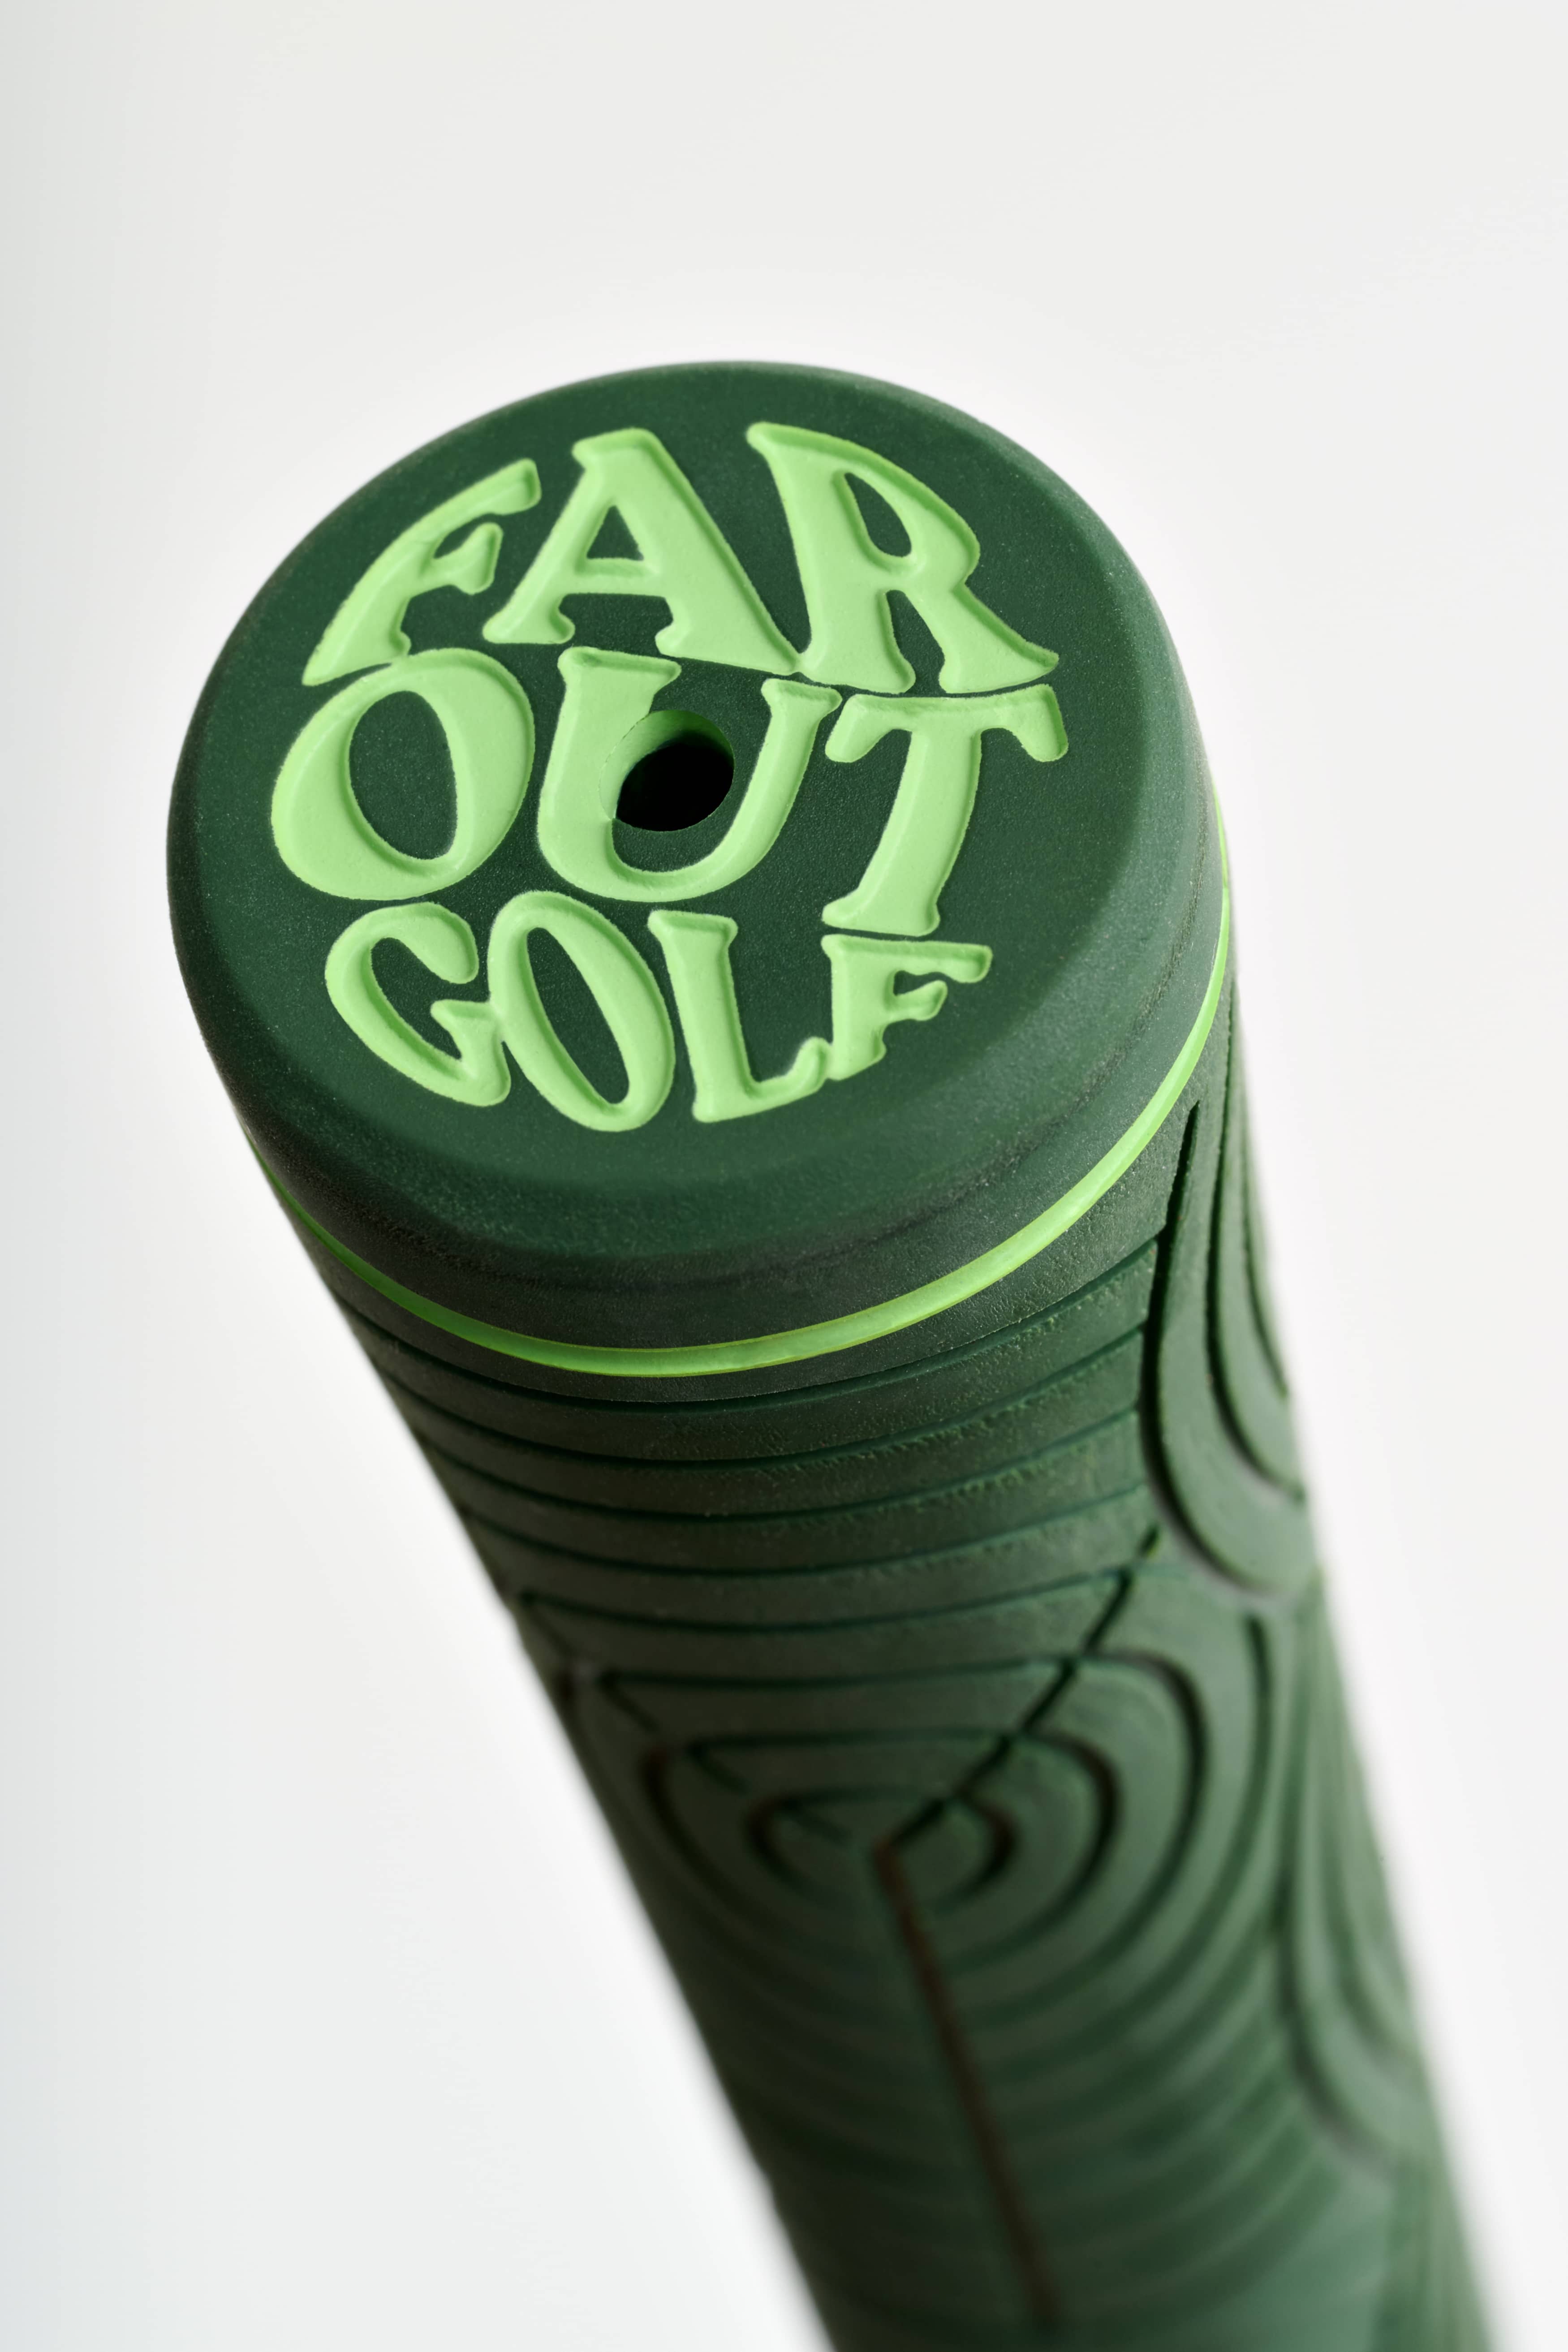 Jade golf grip - Standard